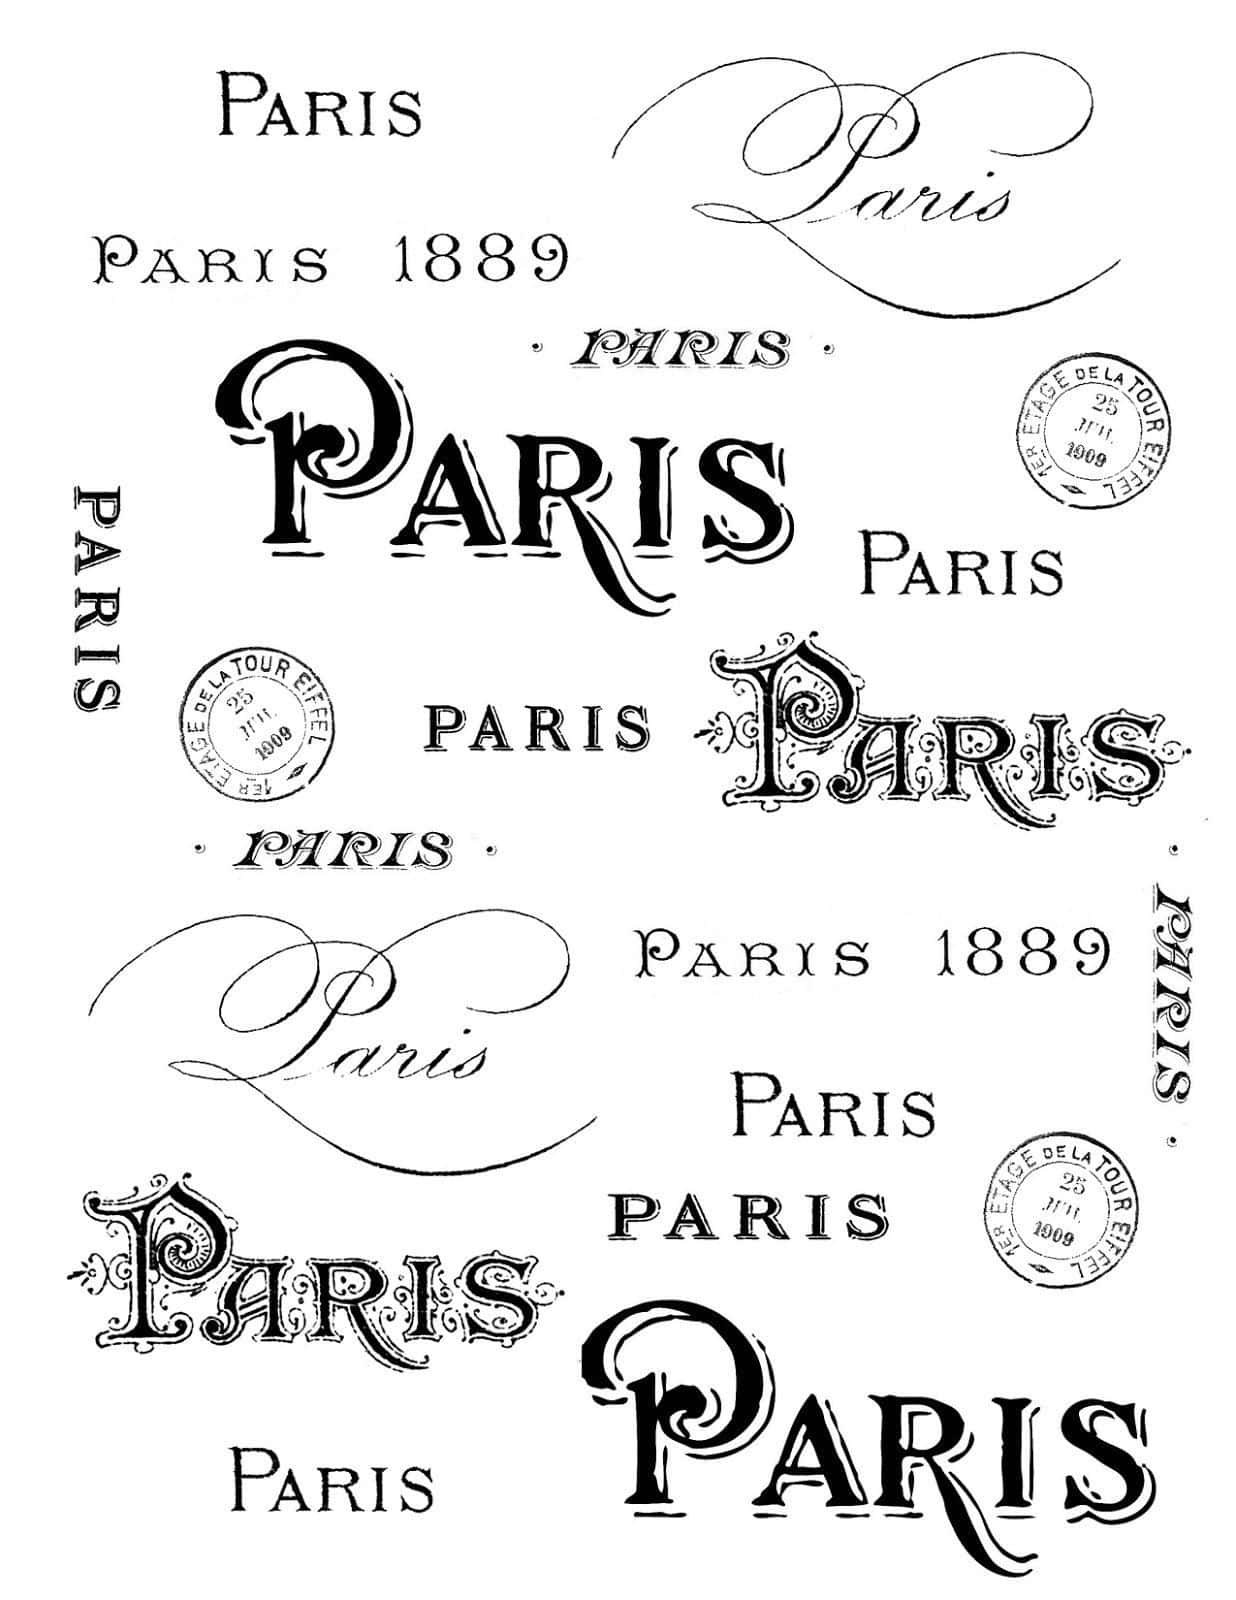 Testoitaliano: Immagine Parigi 1889